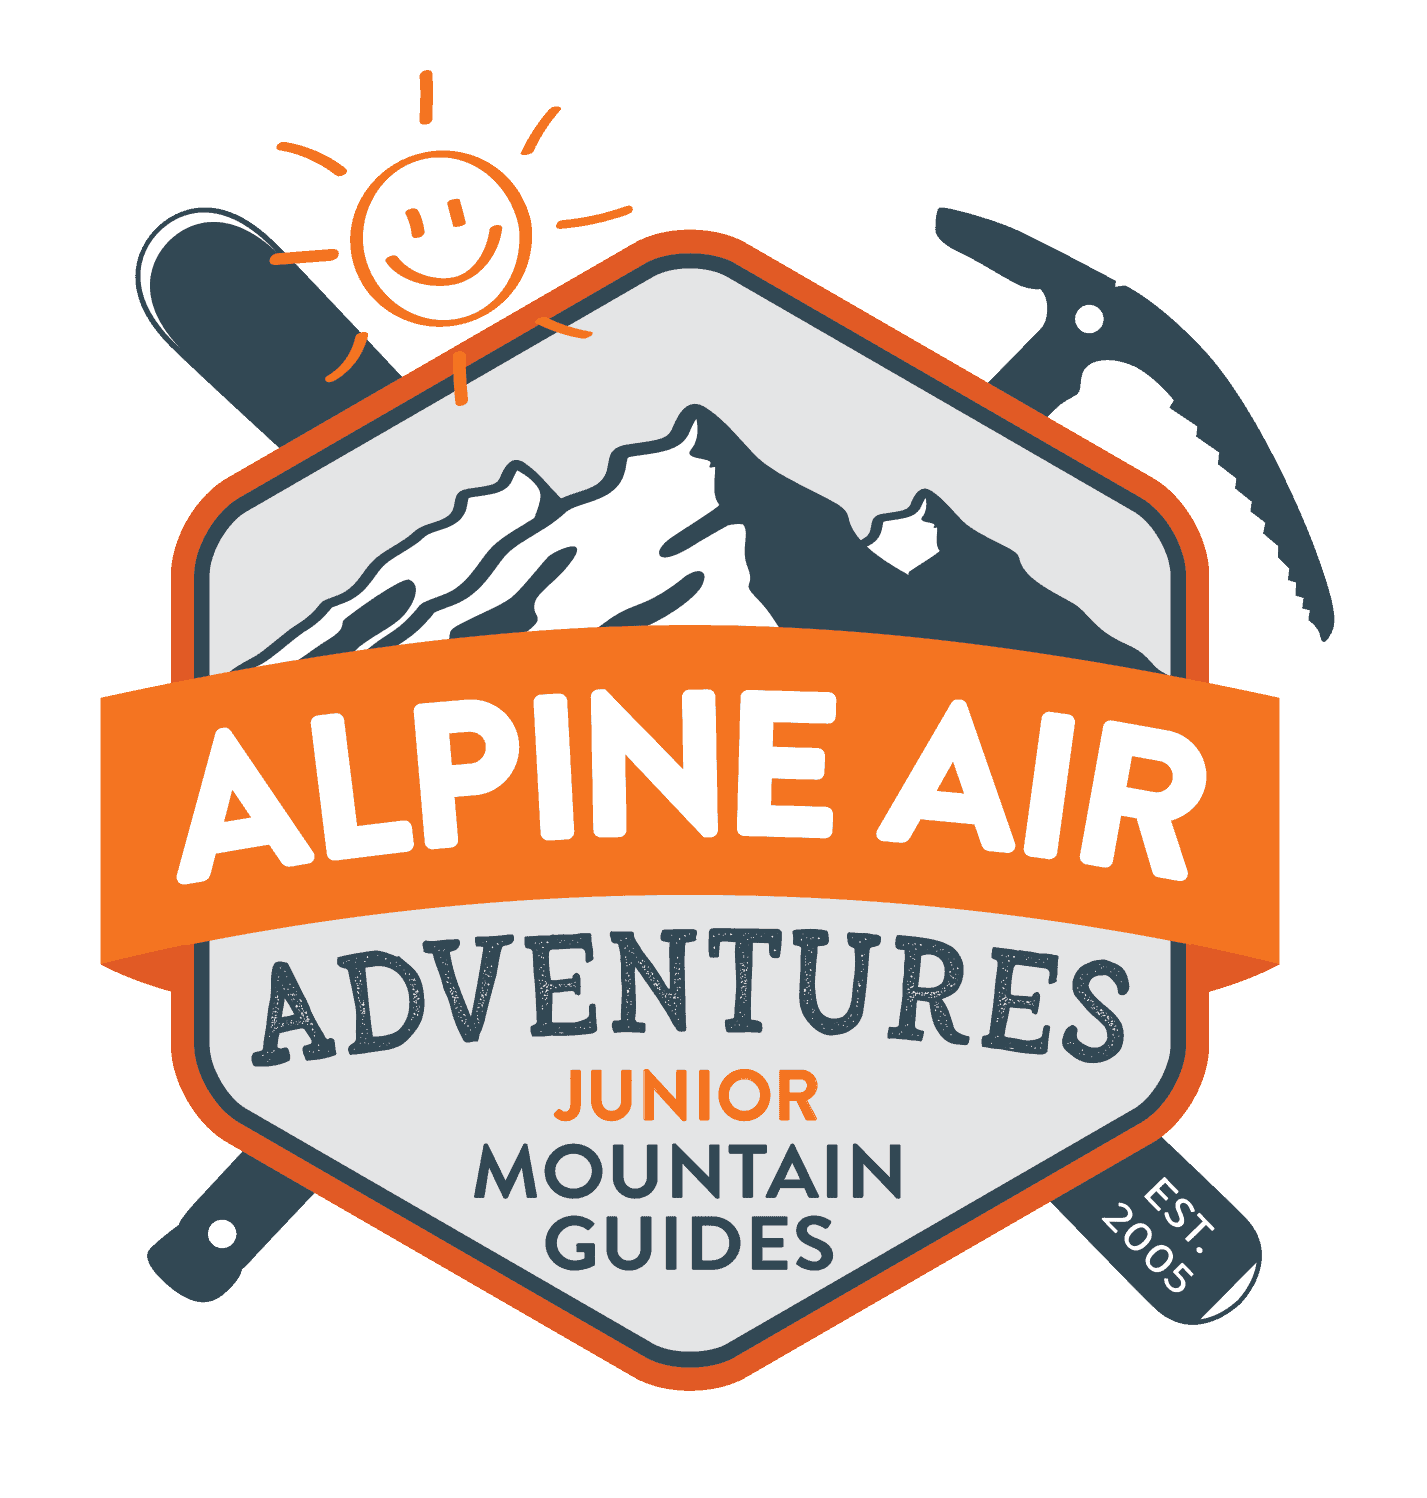 Junior Mountain Guide - Alpine Air Adventures